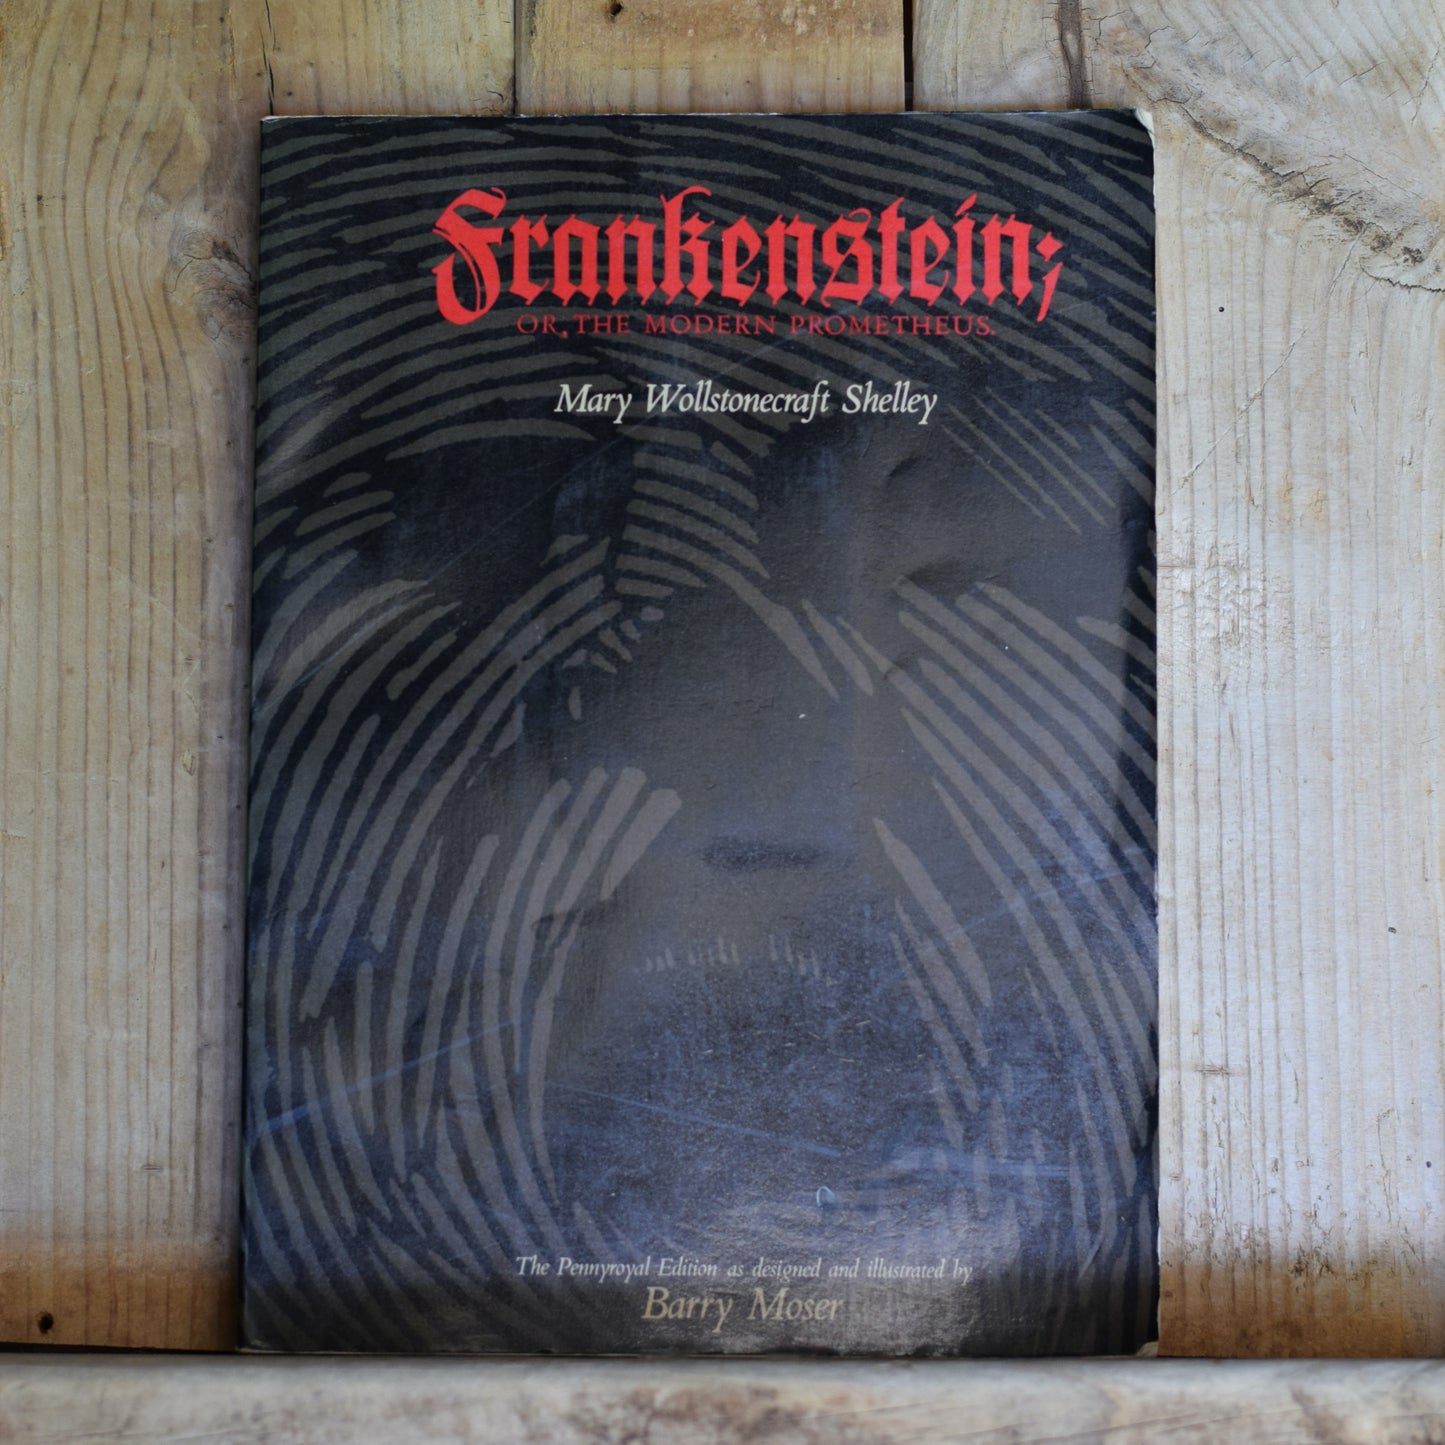 Vintage Horror Paperback: Mary Wollstonecraft Shelley - Frankenstein